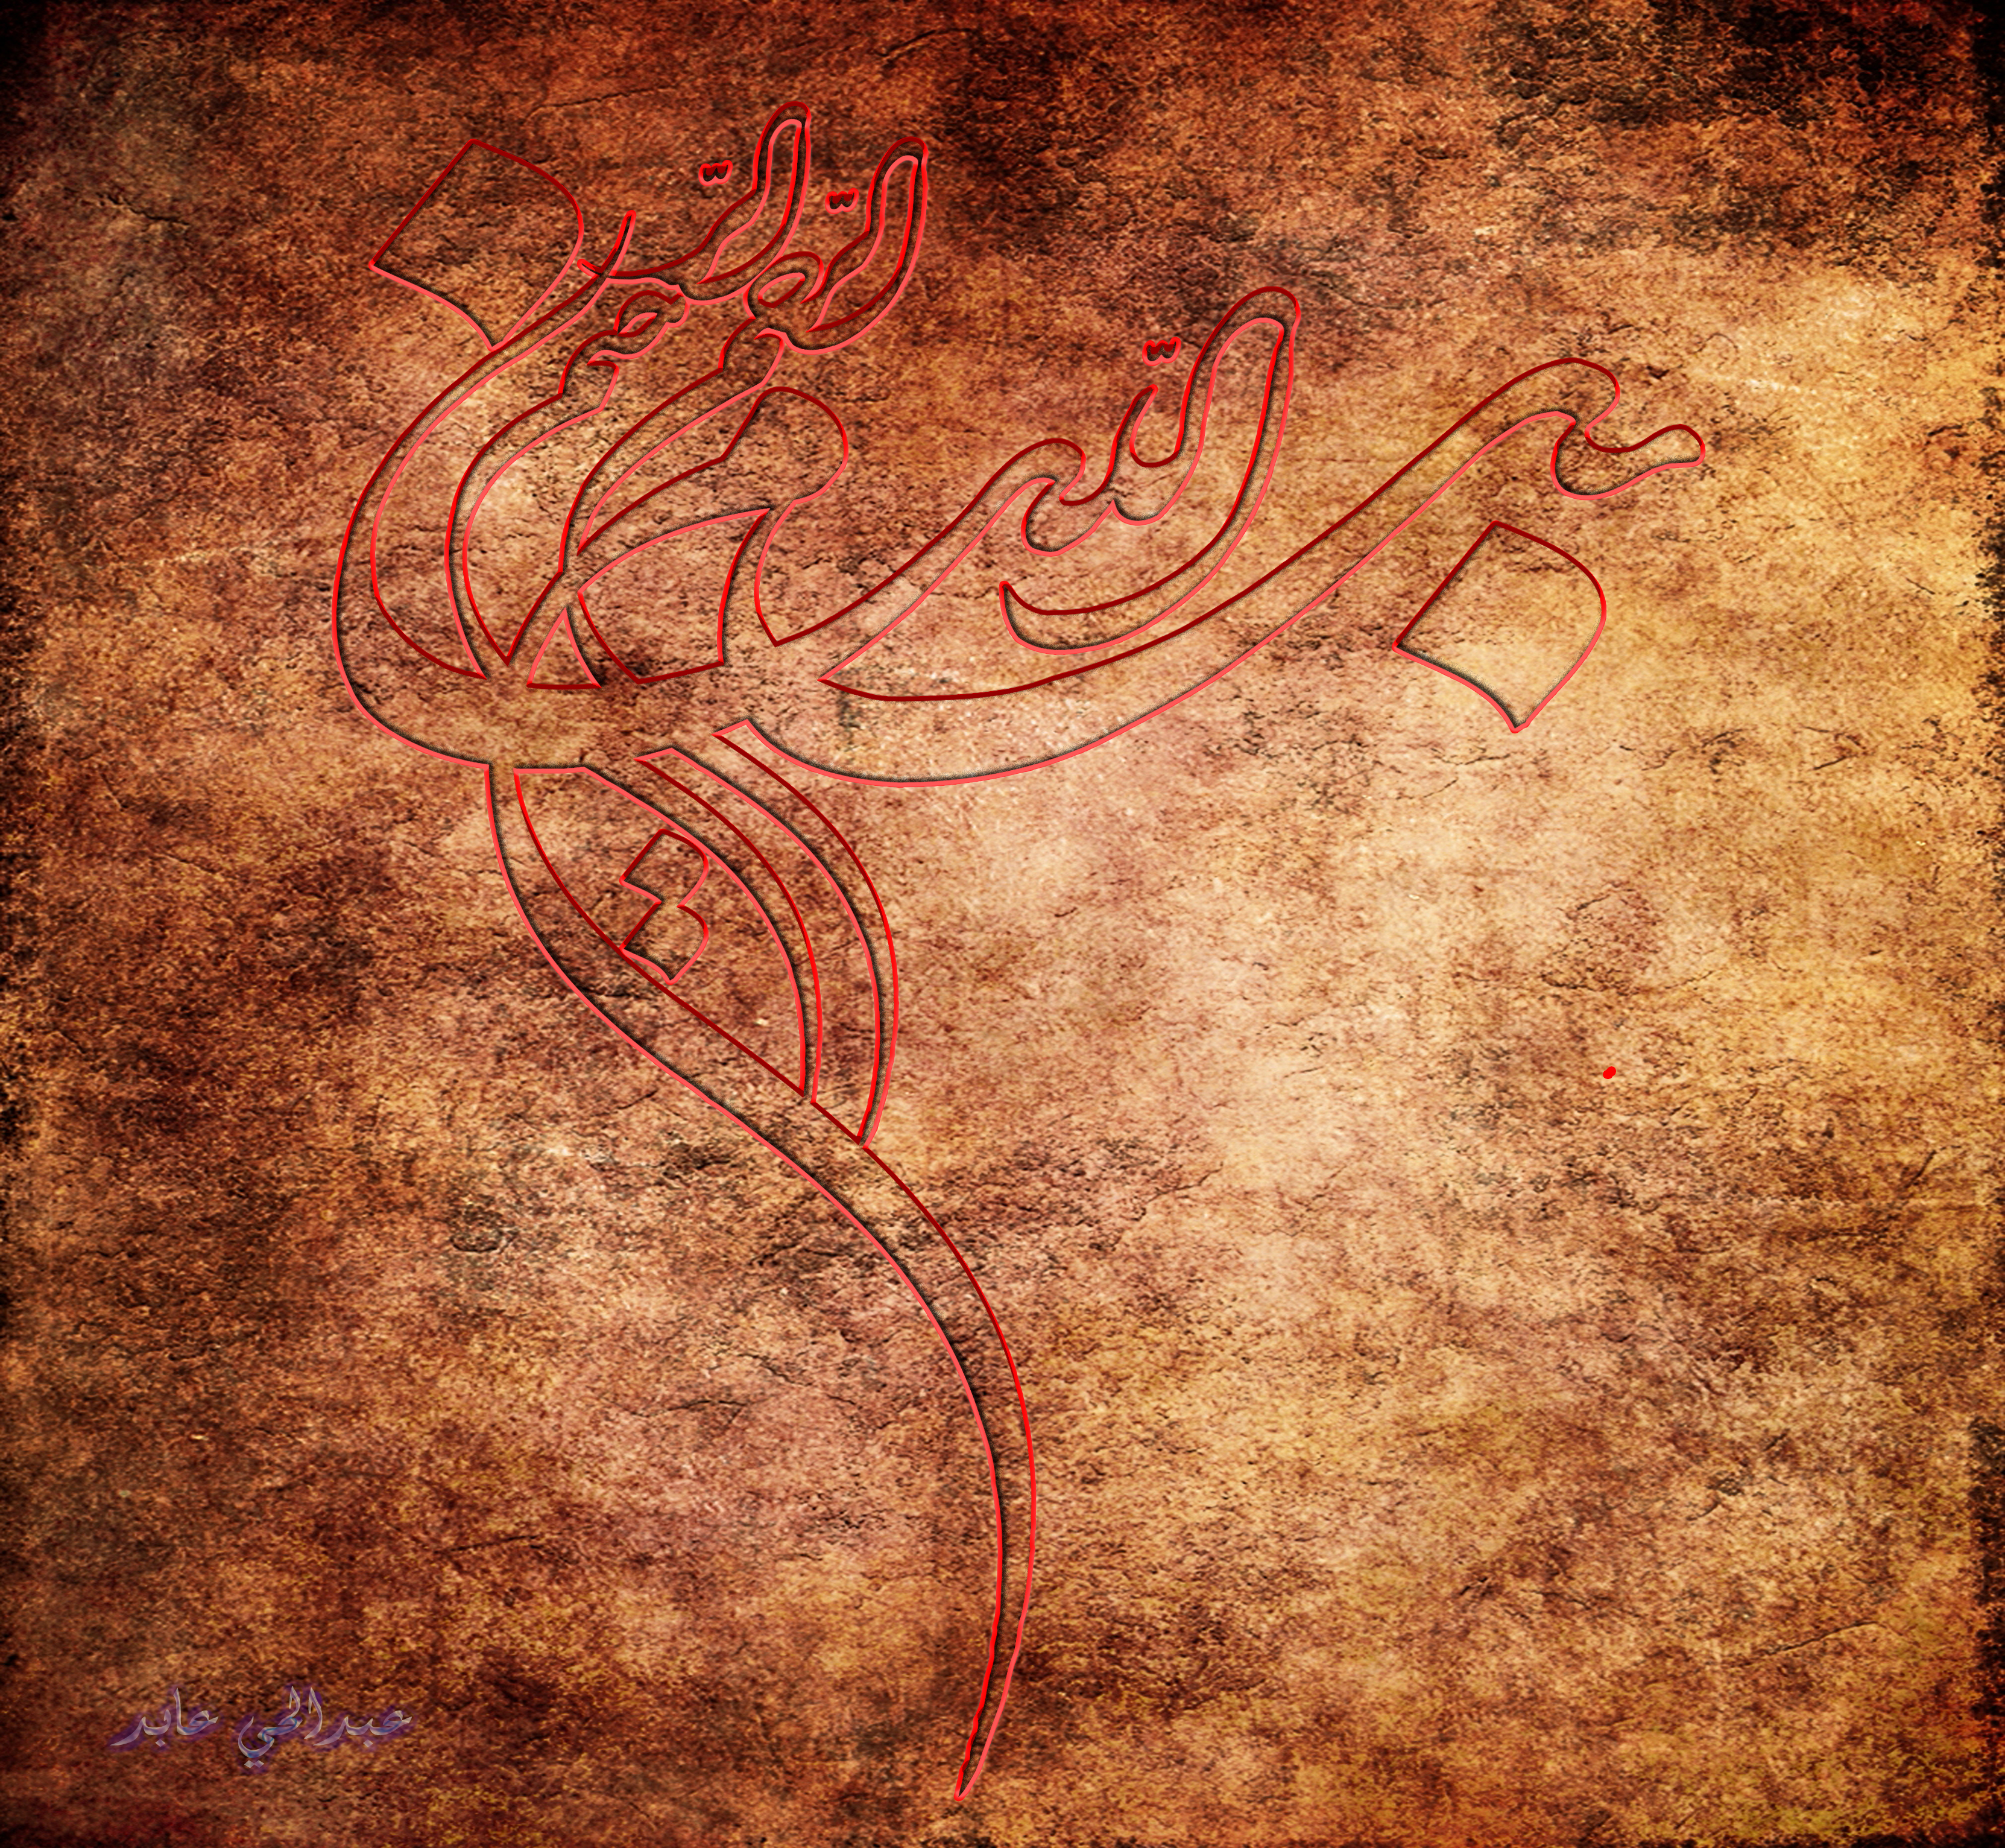 Islamic Art - 3325x3064 Wallpaper 